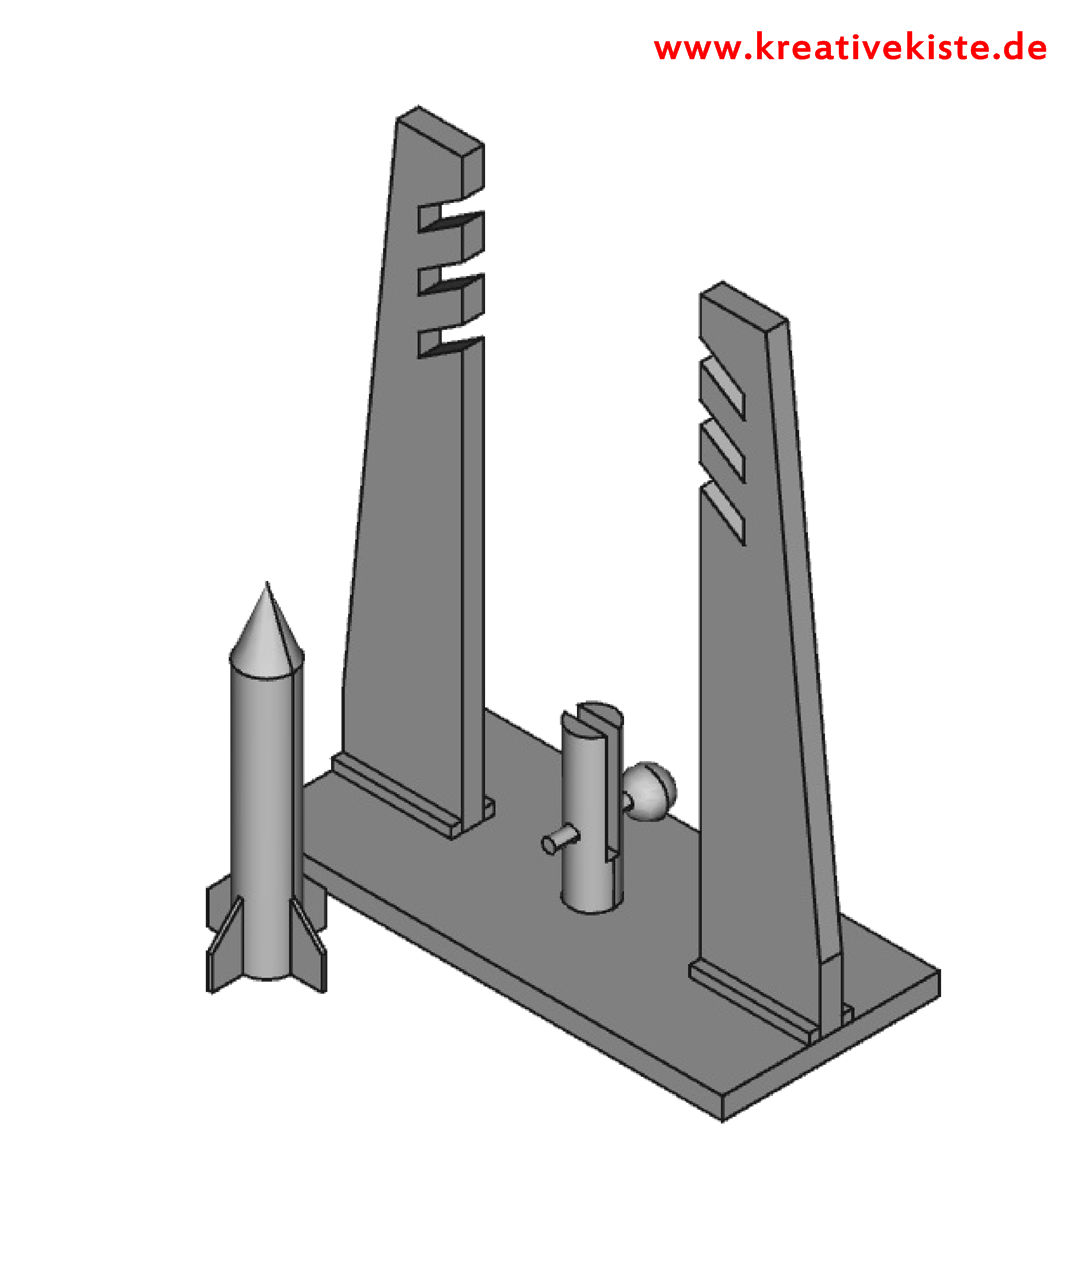 2-raketen-selber-bauen-vorlage-anleitung